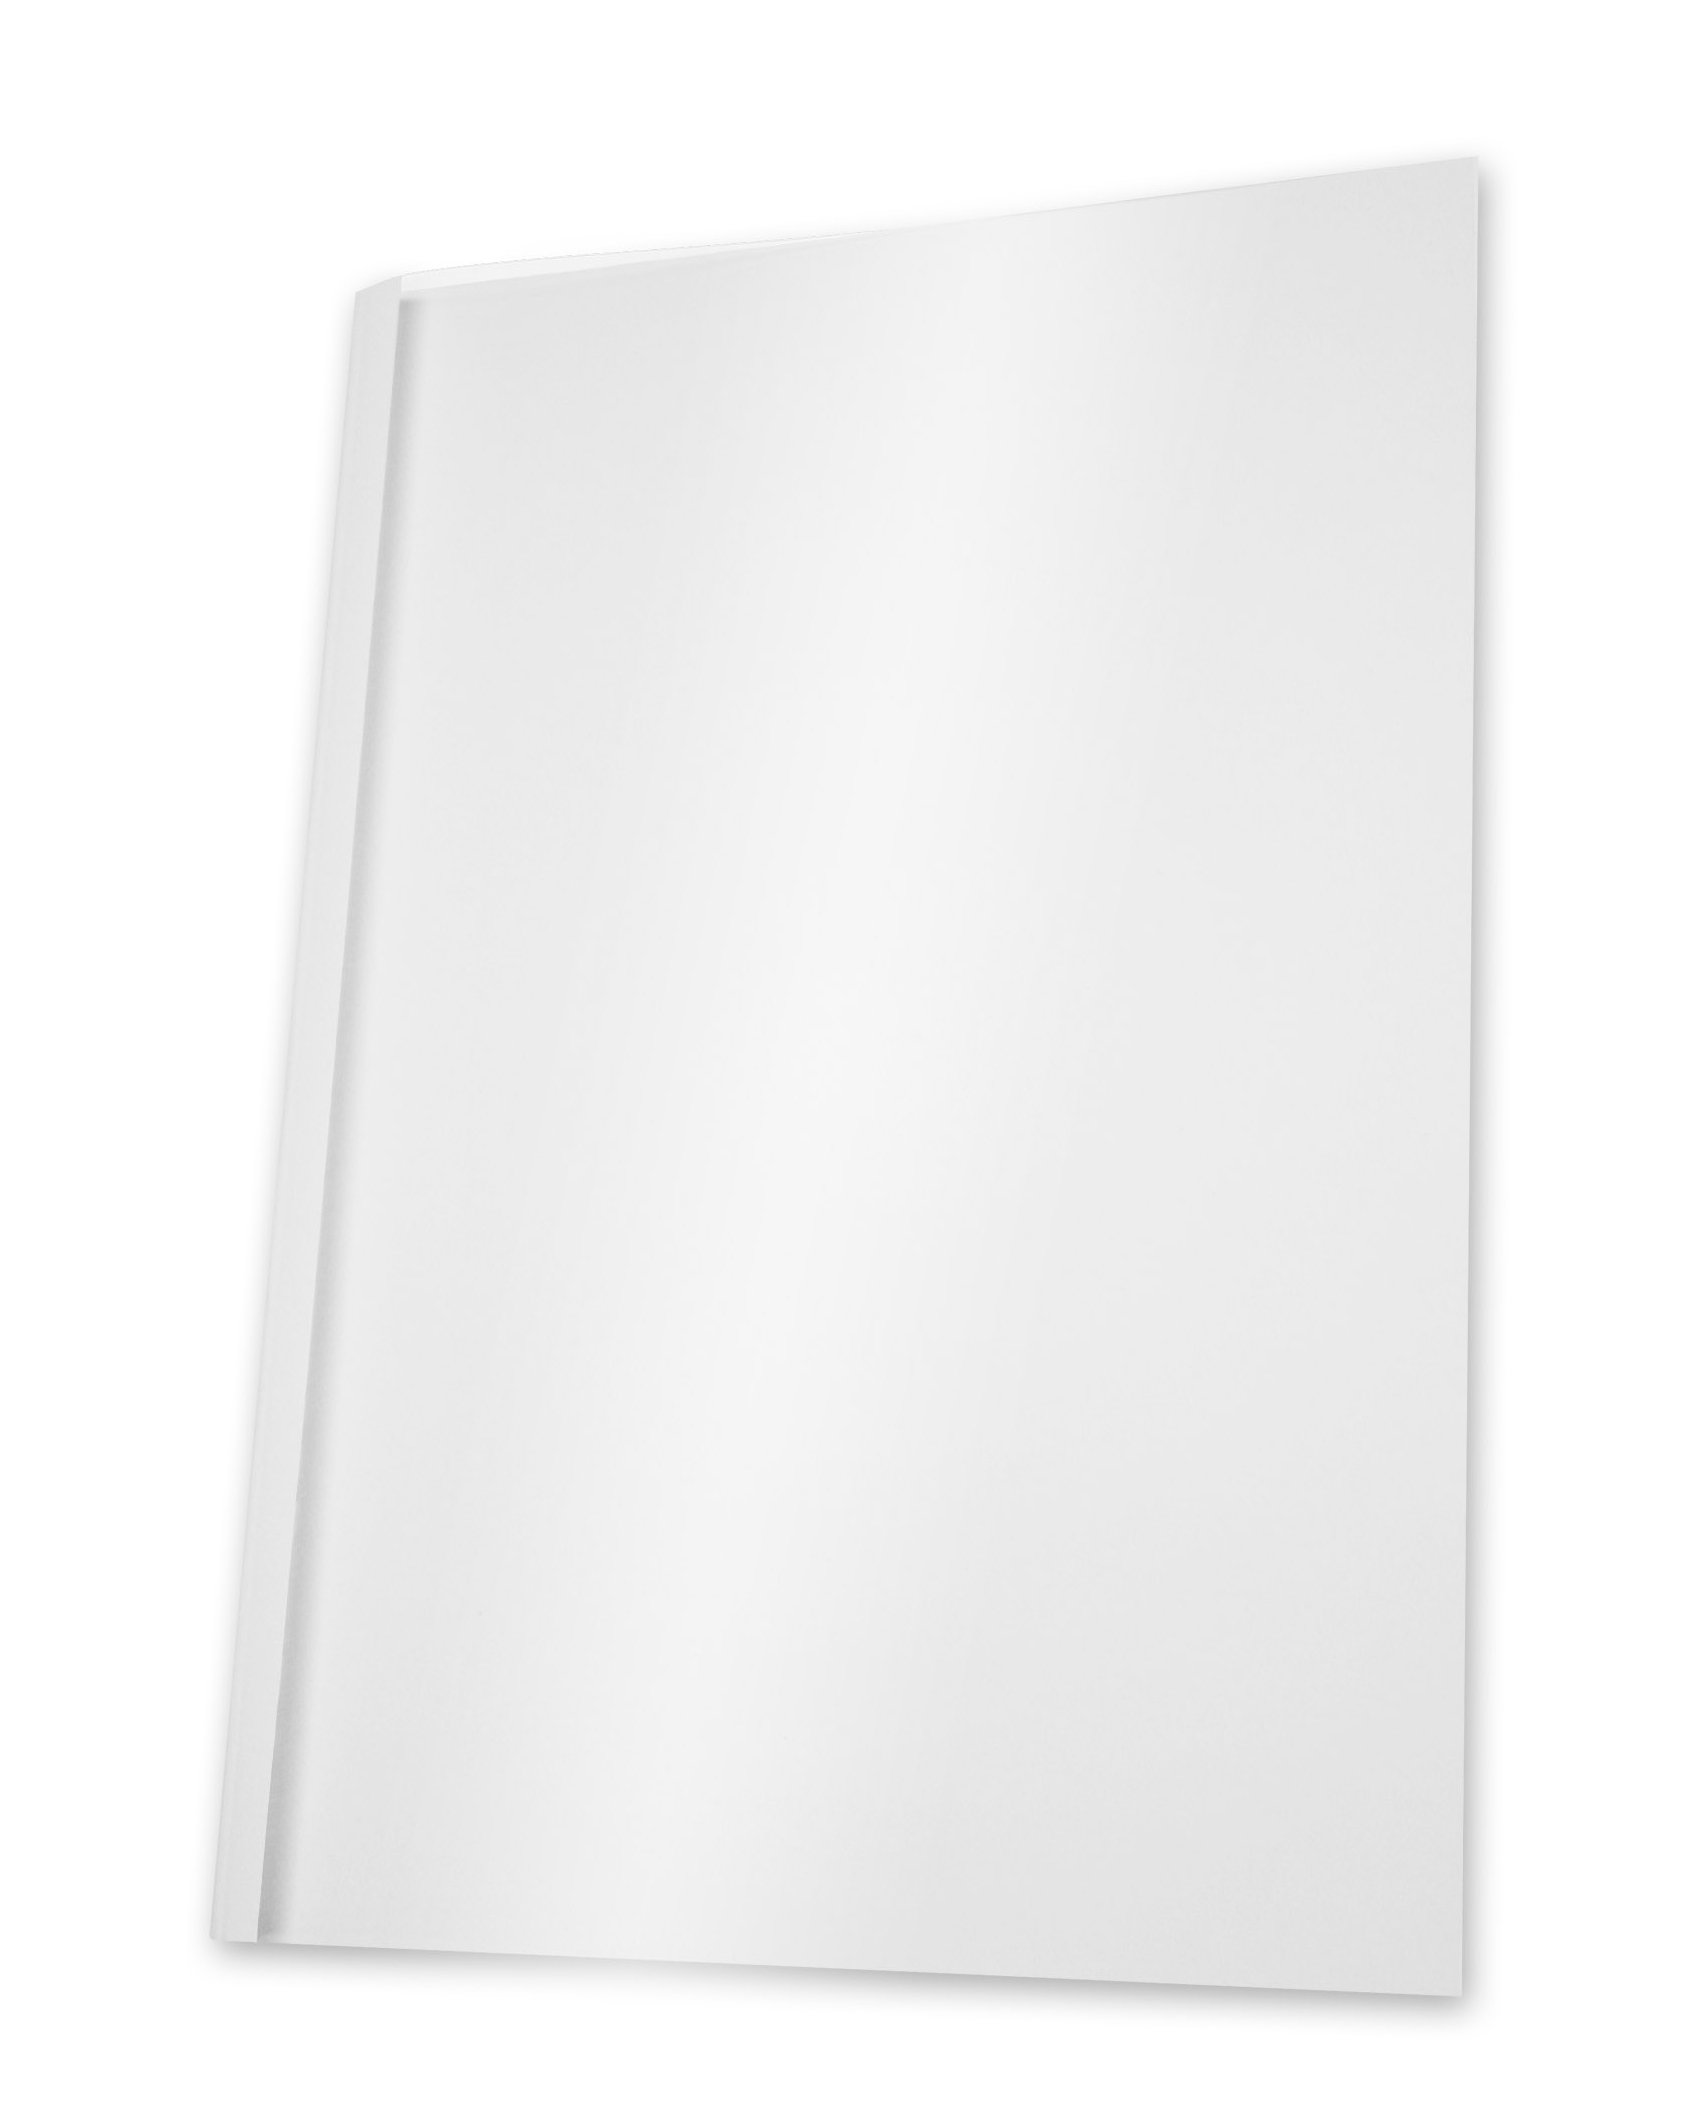 Pavo Thermo-bindemappen A4, Rückenbreite 12 mm, 100-er Pack, 101-121 Blatt, weiß/transparent